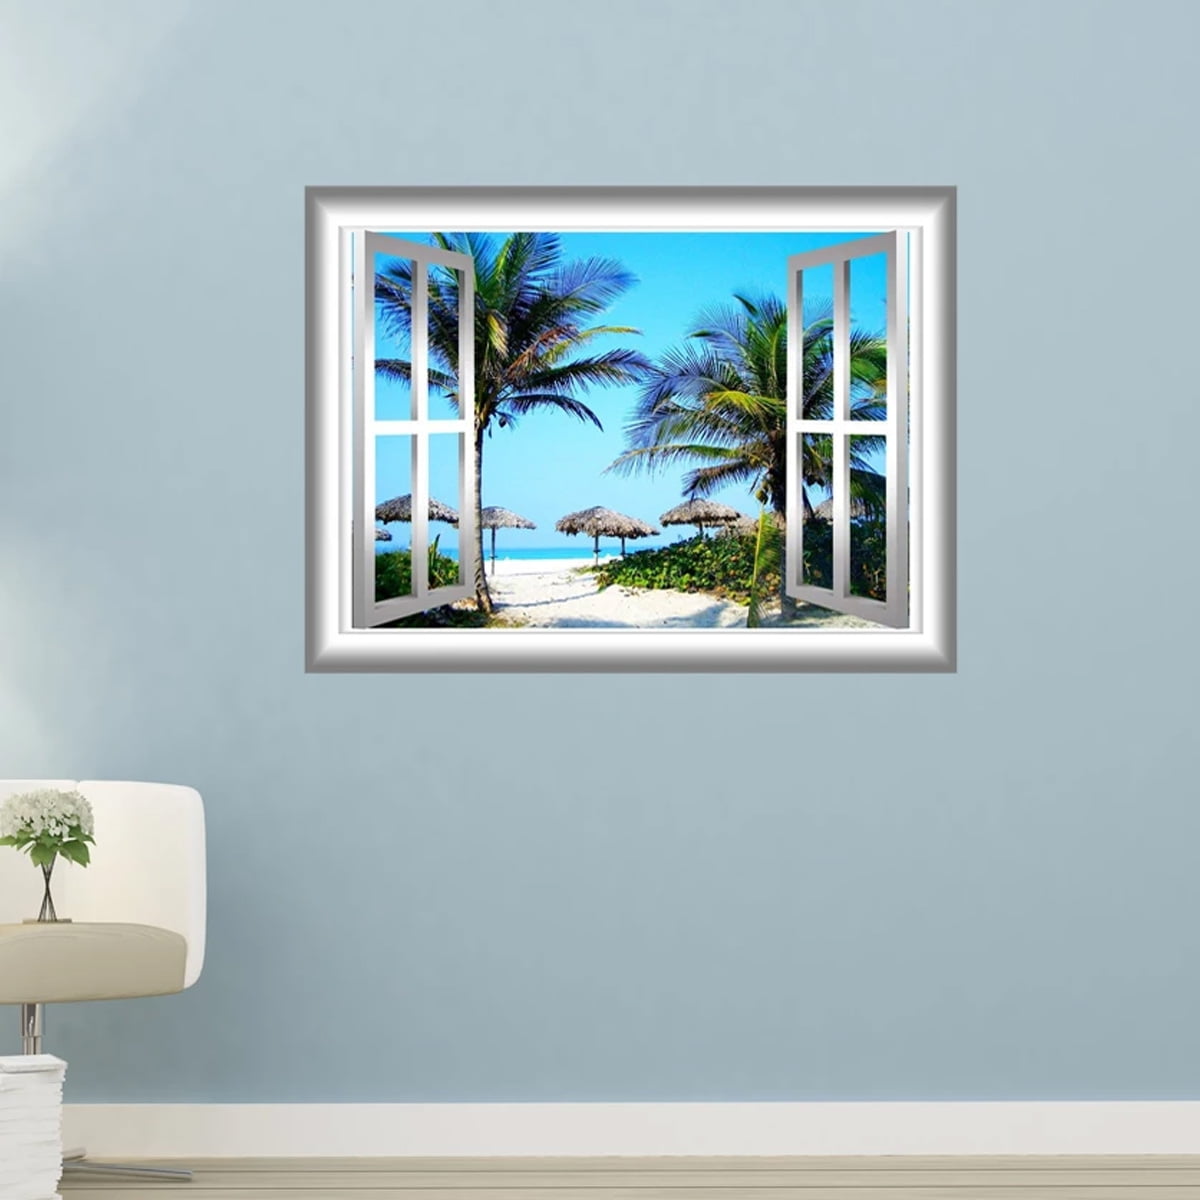 Huge Window Wall sticker Beach Palm Vinyl Decor 3d Mural Art Home Removable 